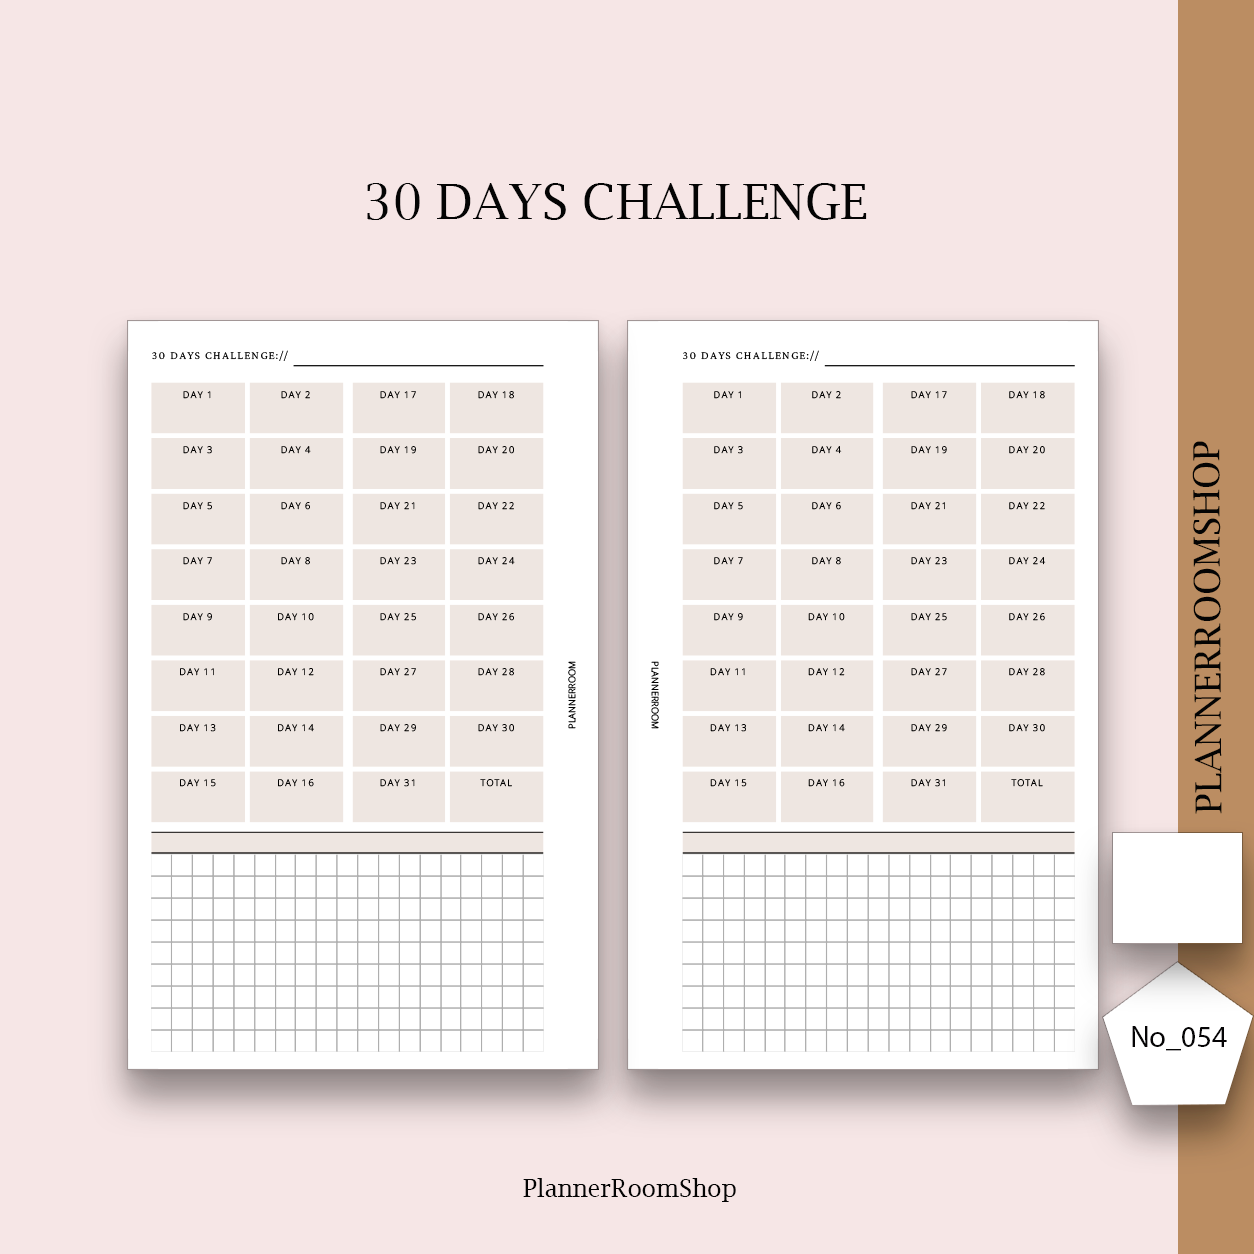 30 days challenge tracker - 054